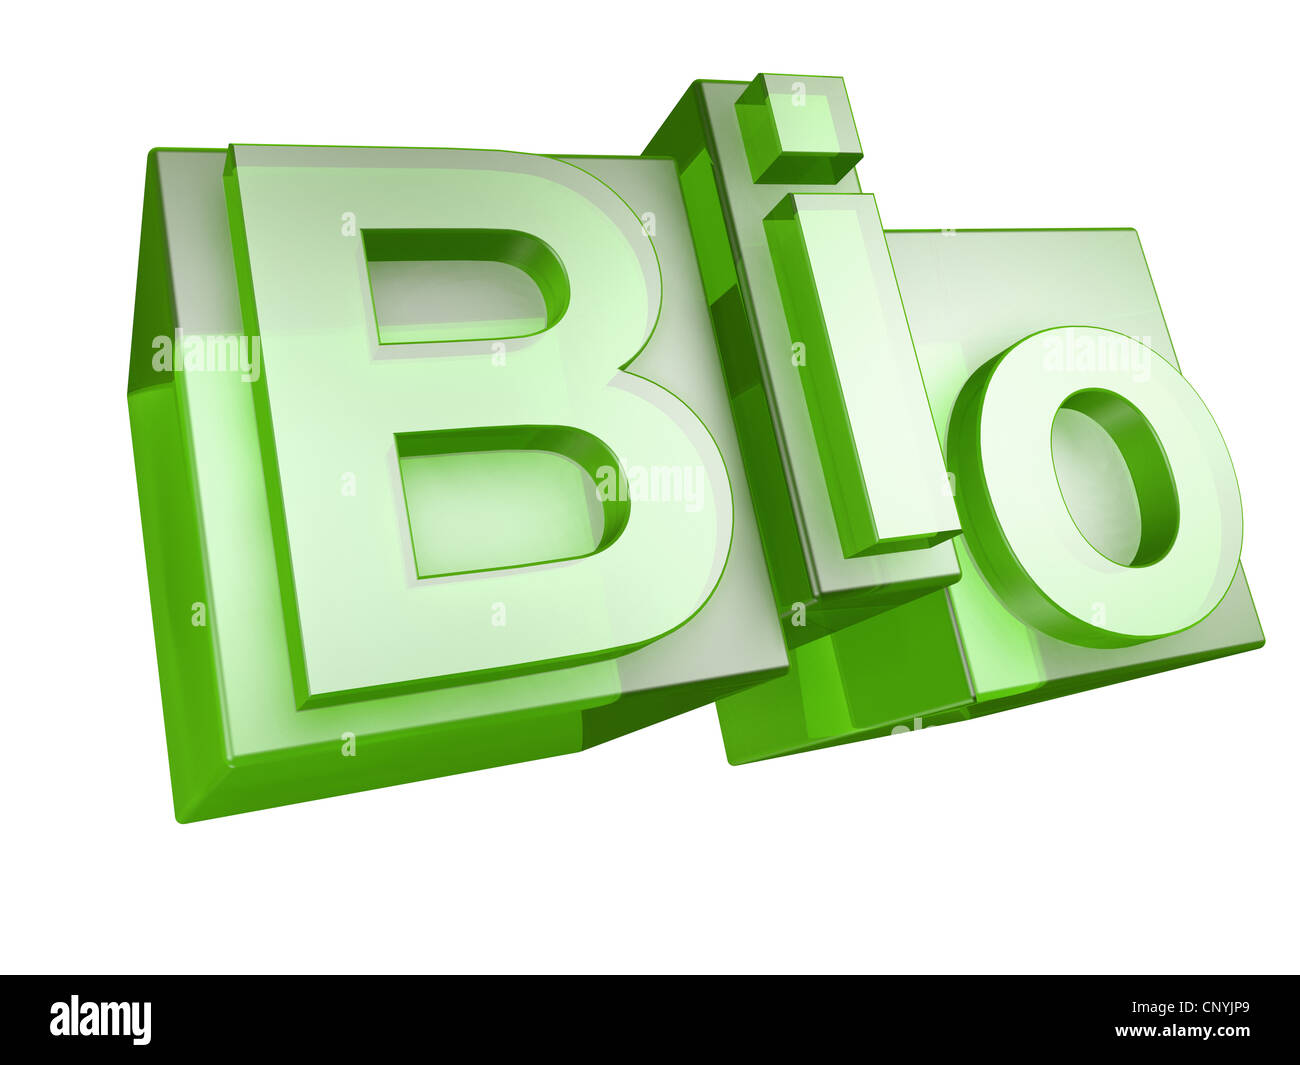 Das Wort BIO in grüner 3D Schrift auf weißem Hintergrund - Das Johanniskraut Bio aus Gruenen 3D Buchstaben Auf Weißem Hintergrund Stockfoto